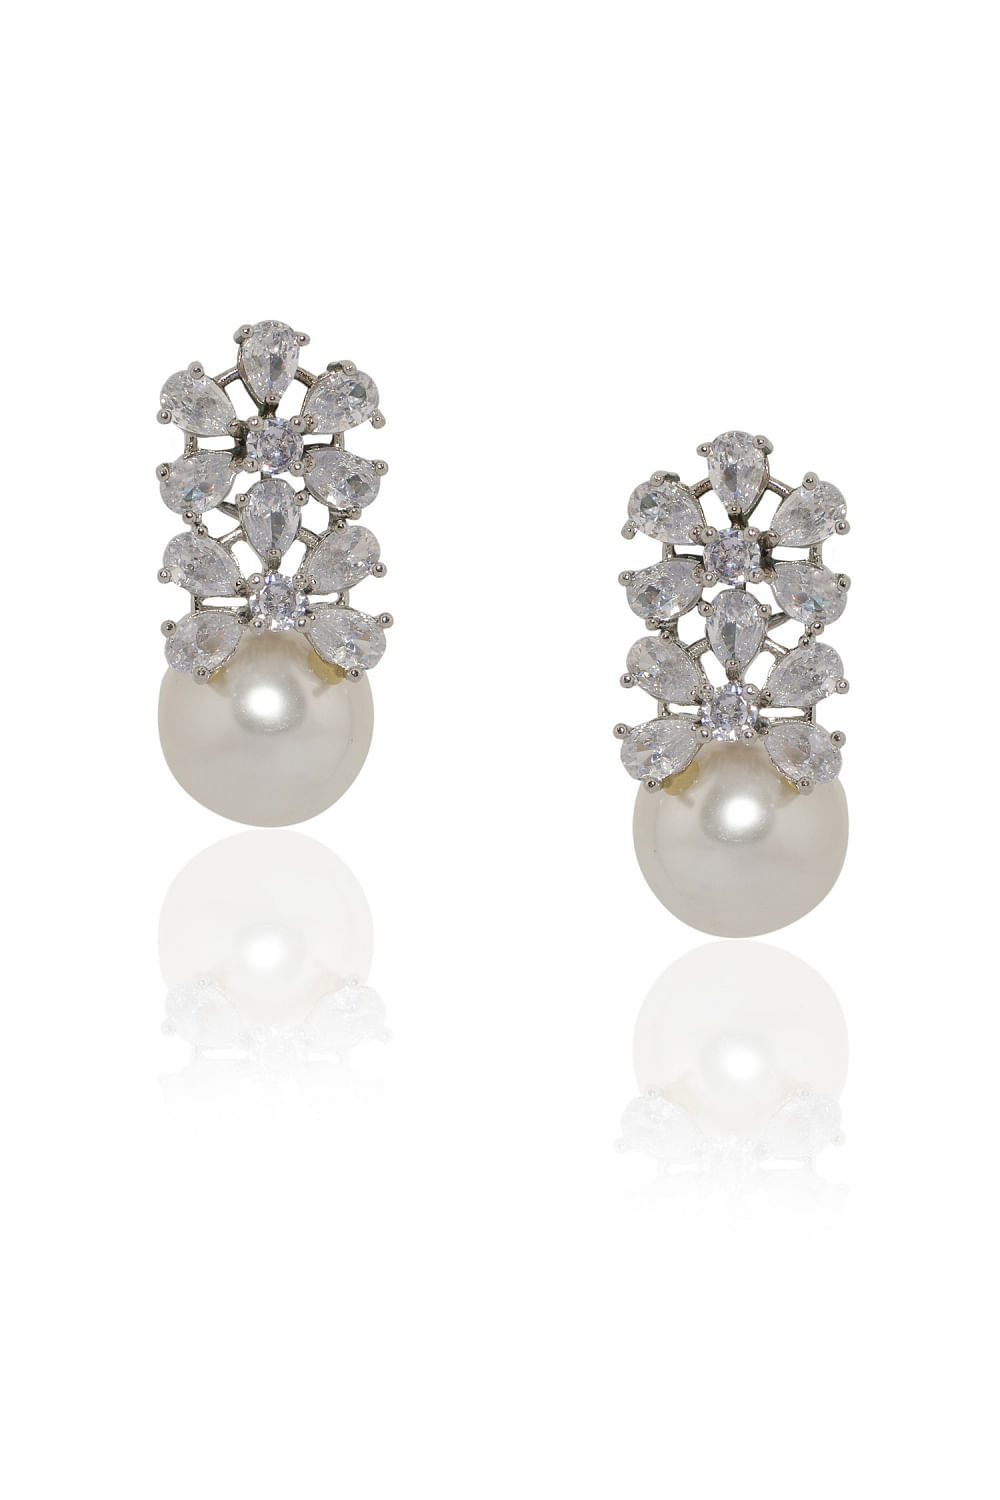 Artificial Diamond Golden Drop Earrings at Rs 299/pair | Mumbai | ID:  23733957962